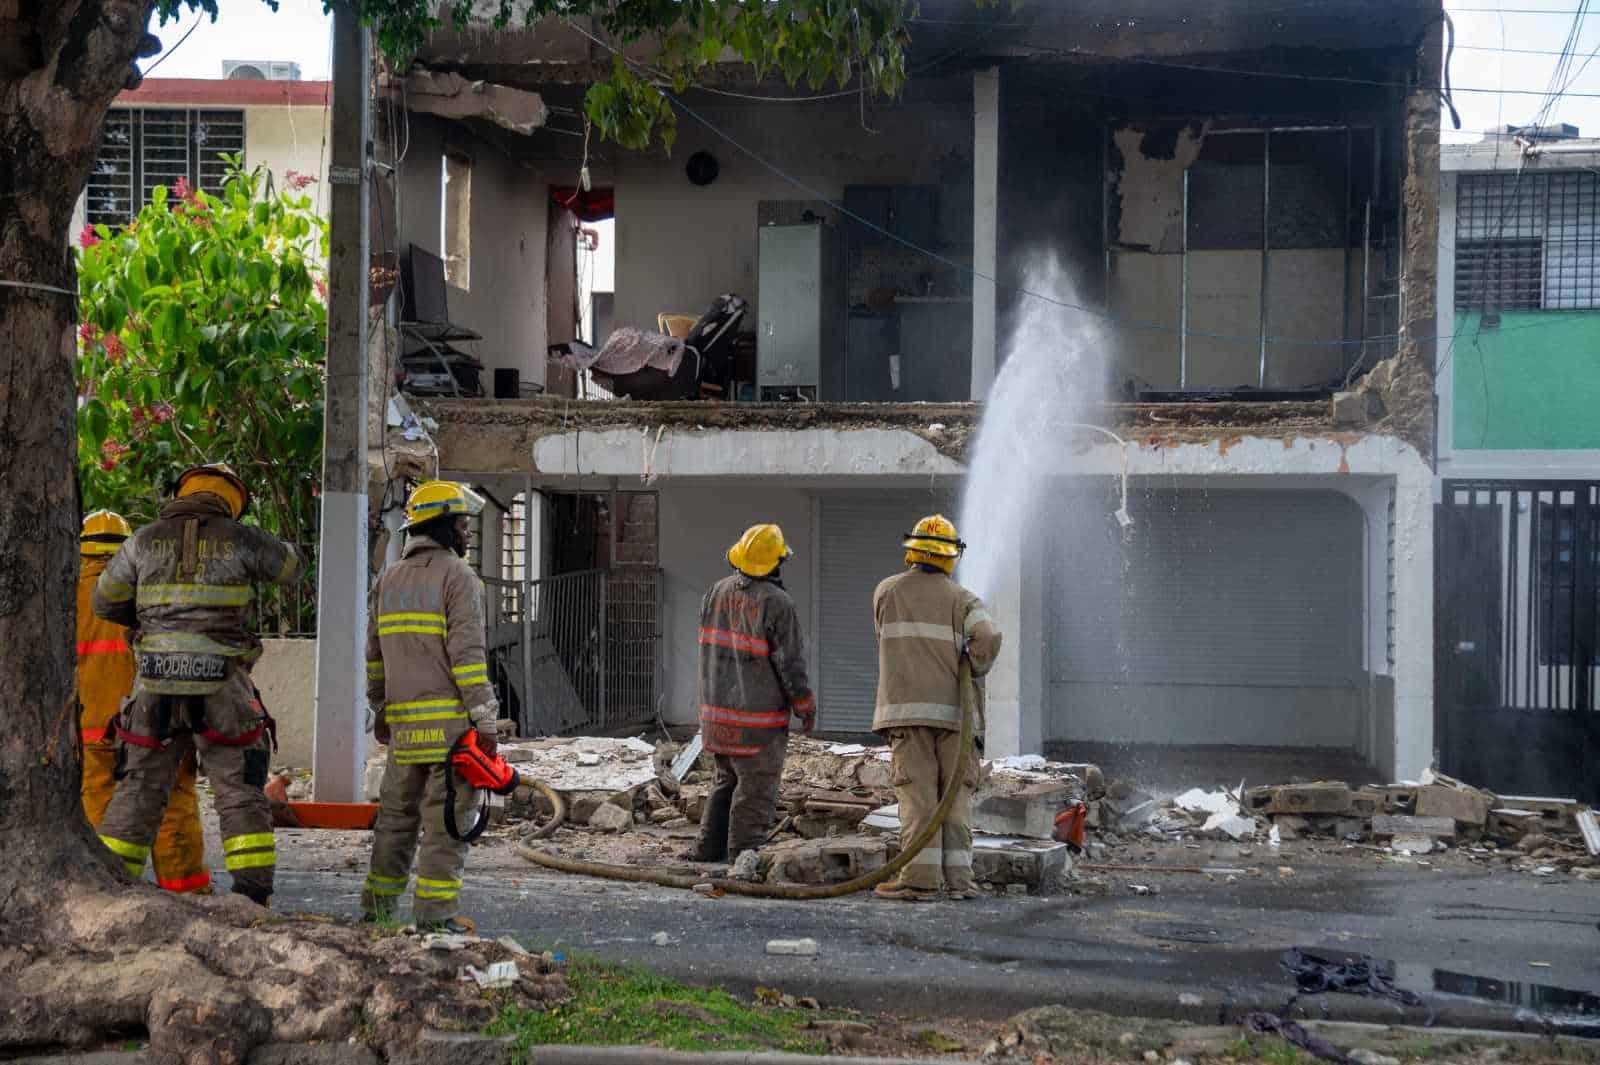 Bomberos apagaron el fuego de inmediato, evitando que se traslade a otras áreas de la vivienda.